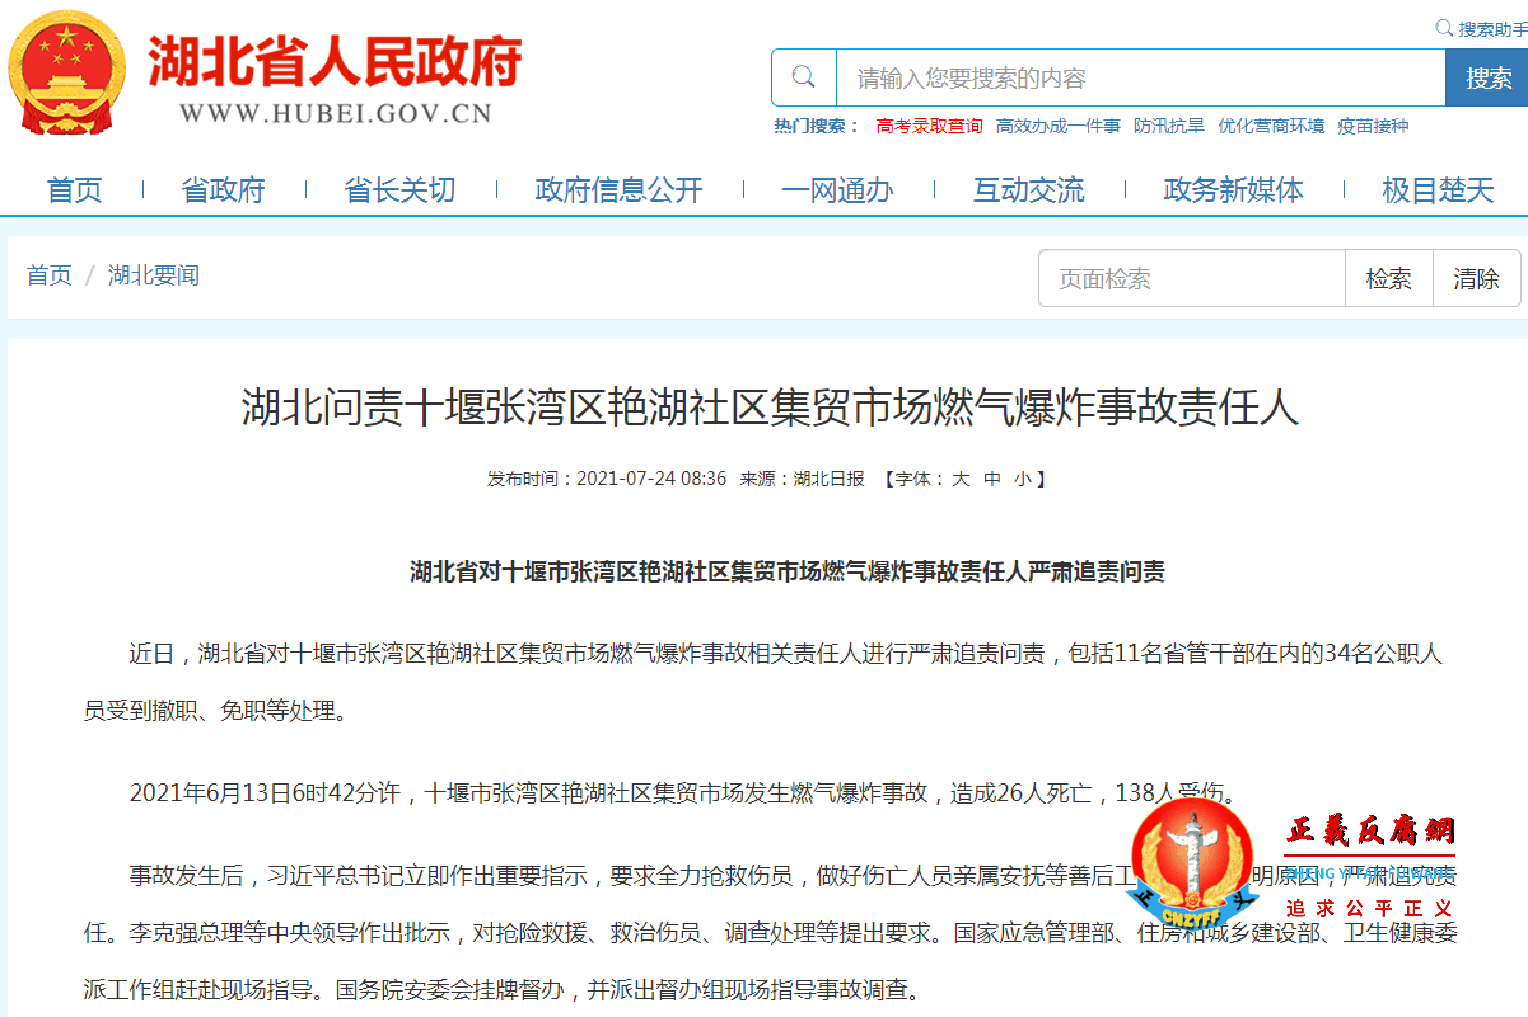 7月24日早上，湖北省政府对十堰市张湾区艳湖社区集贸市场燃气爆炸事故责任人严肃追责问责。.png